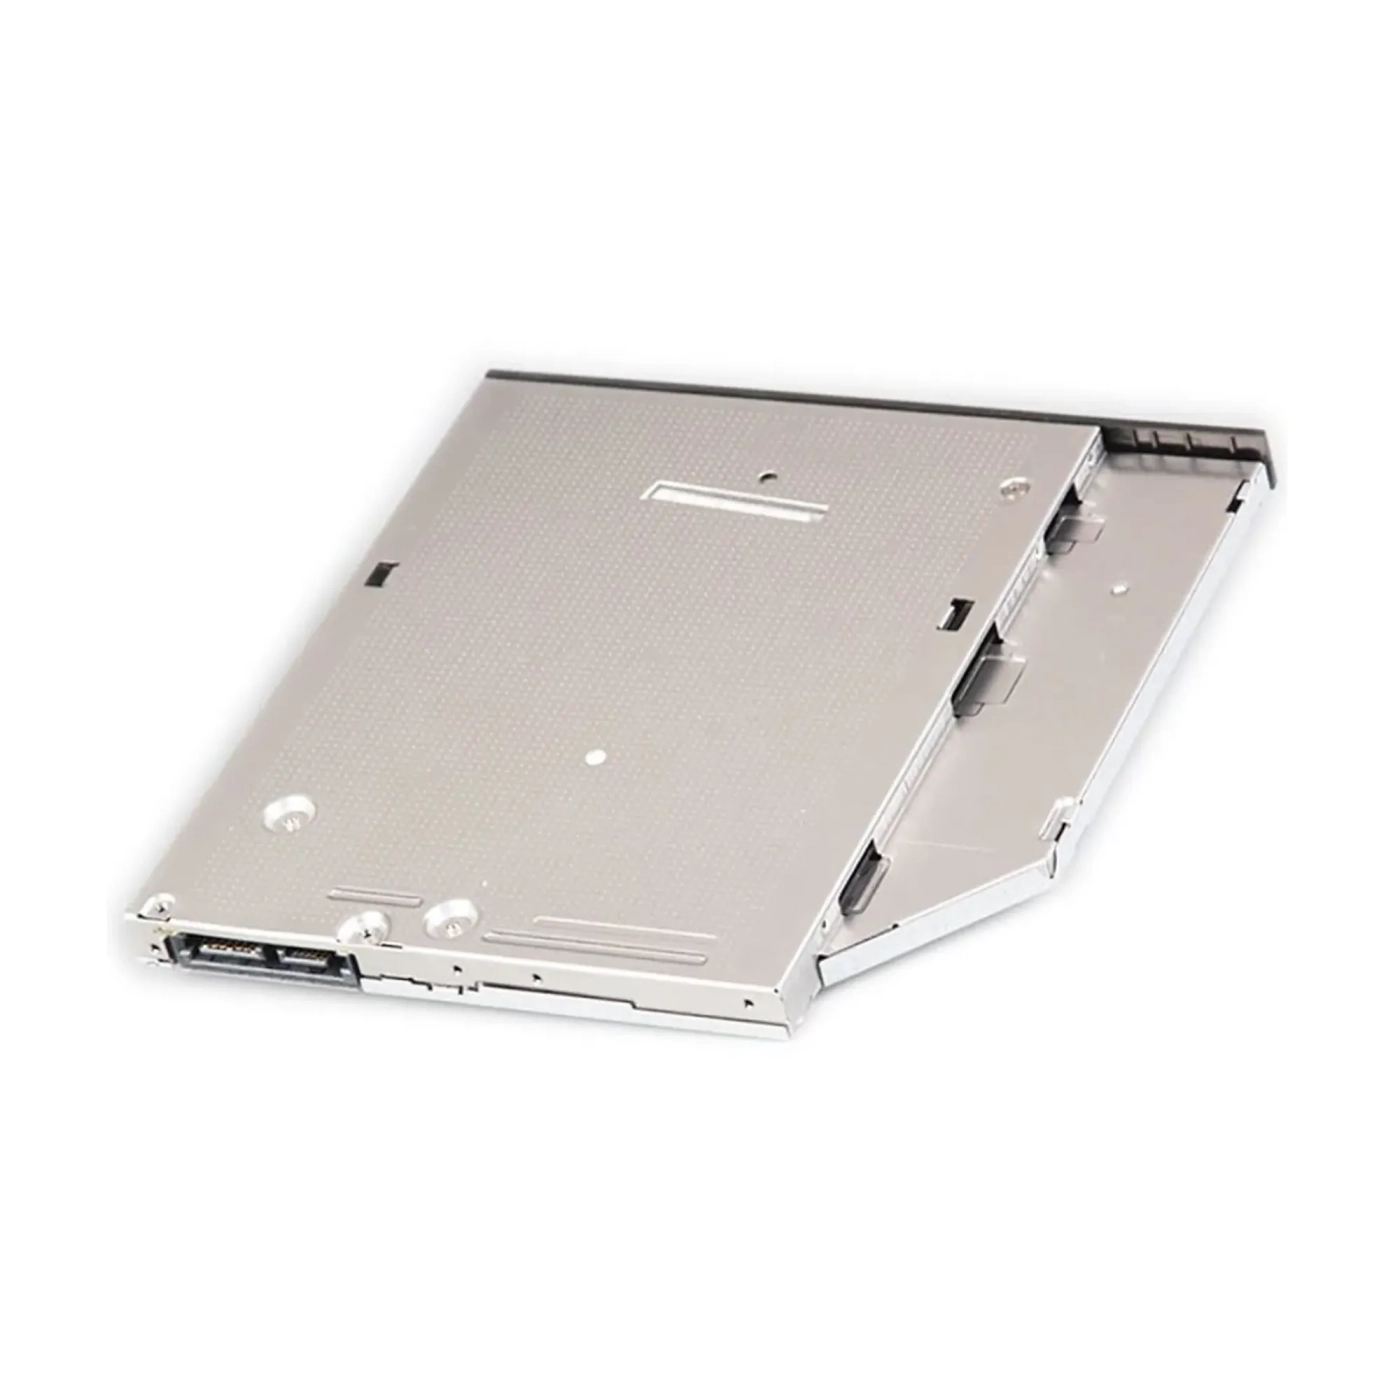 Купить DVD±RW привод для ноутбука SATA 9.5mm Hitachi-LG GU90N SuperSlim OEM - фото 6